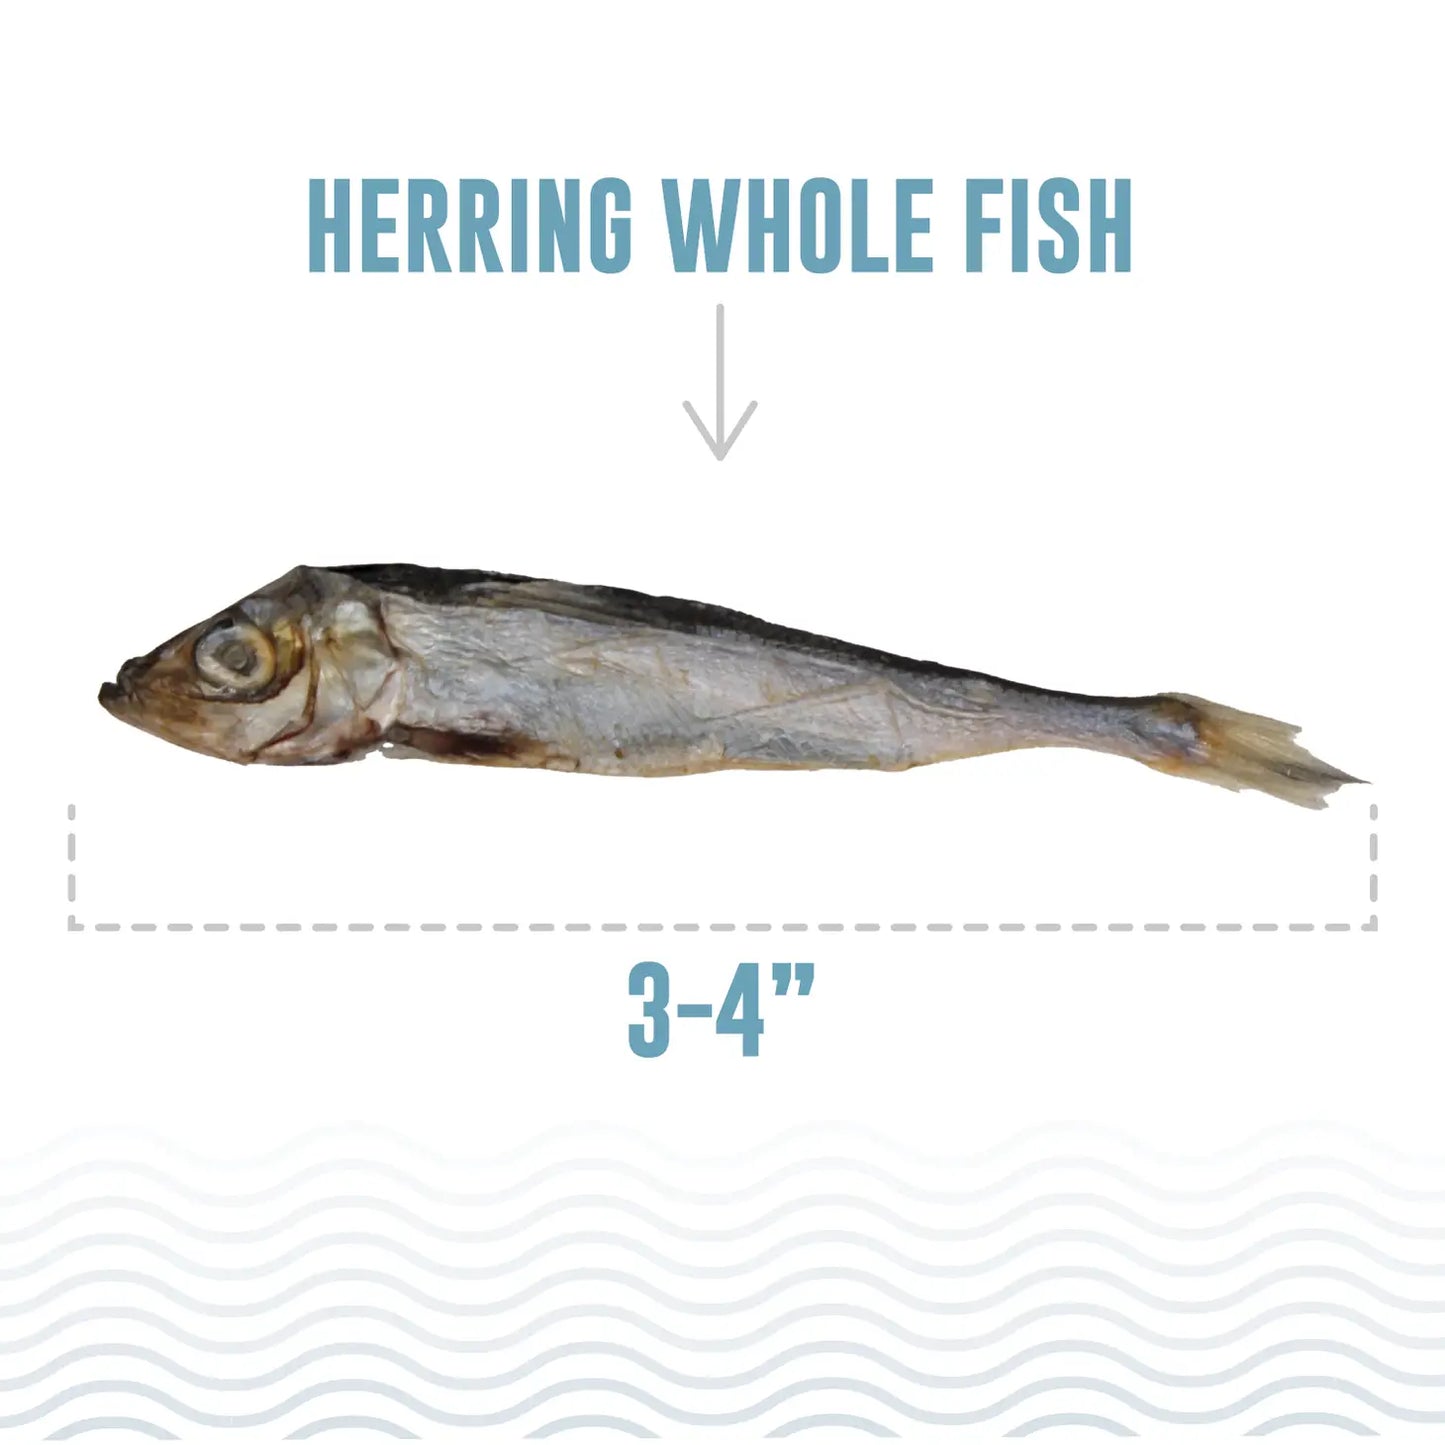 Icelandic+ Herring Whole Fish Cat or Dog Treats 1.5-oz Bag